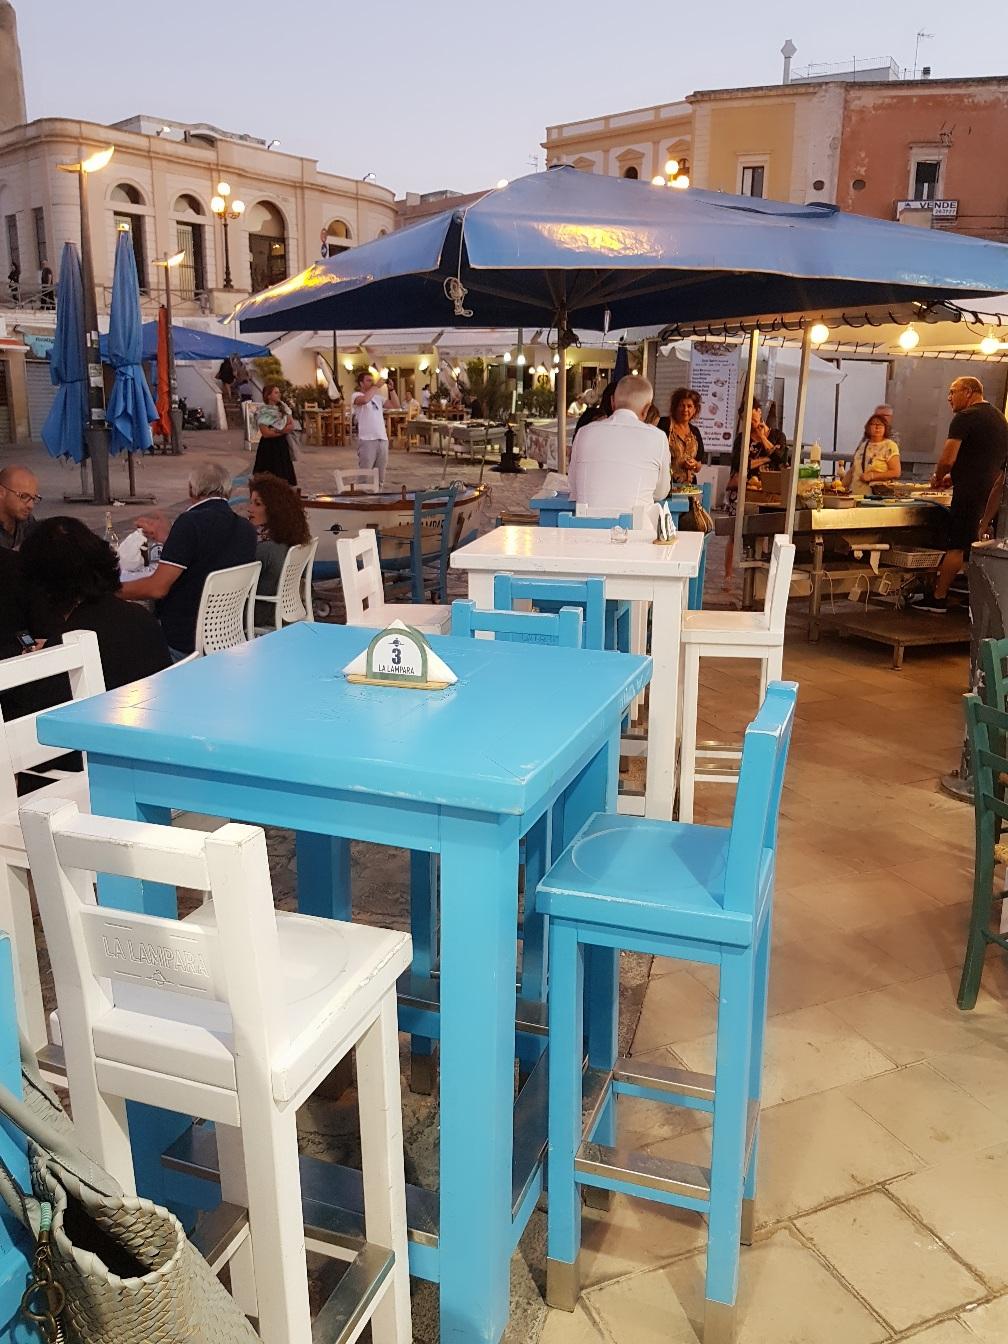 Apulien, wir kommen wieder! #Fisch #blau #mediterran #italien #restaurant #hafen